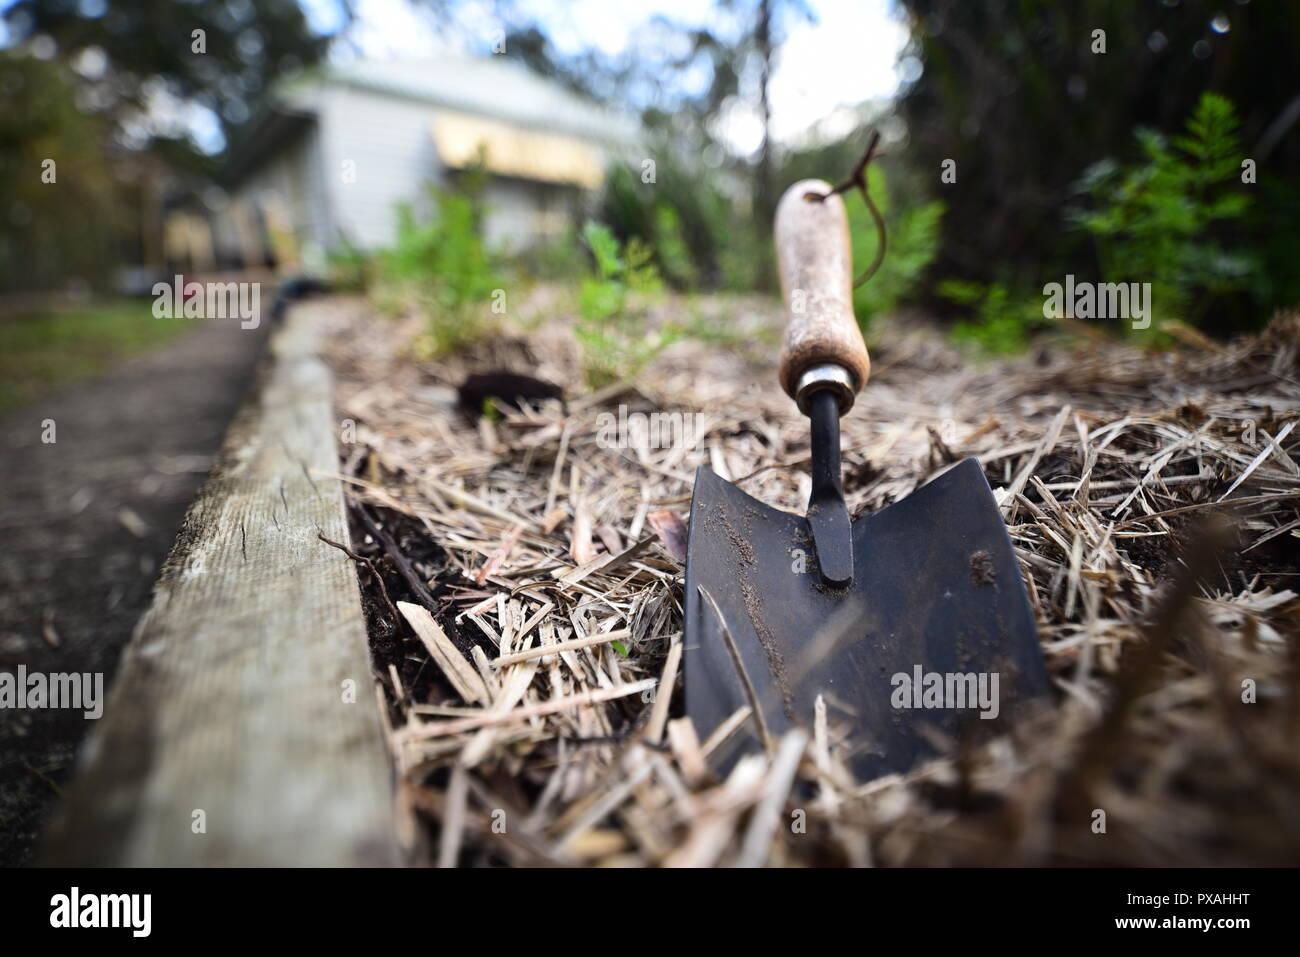 Una pequeña pala de mano en un veggie garden Foto de stock